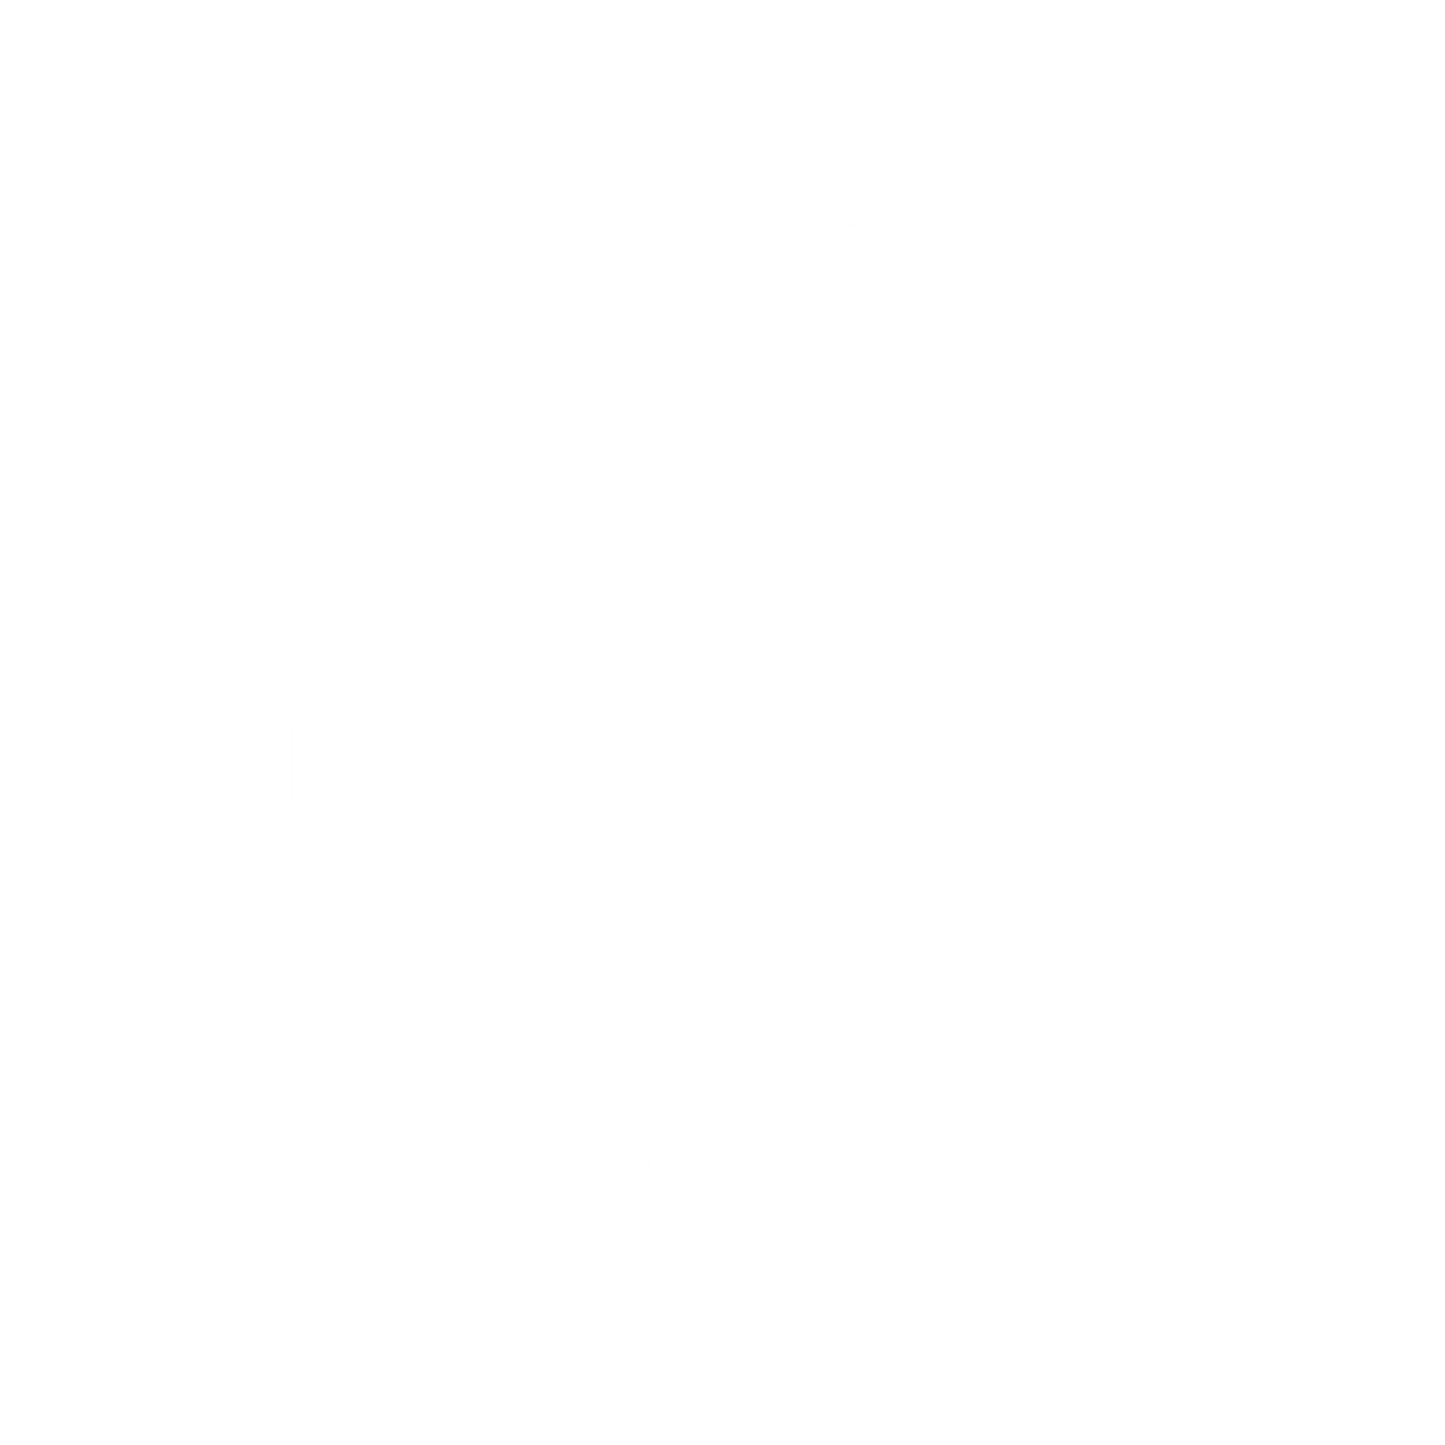 Carpe Friggin' Diem